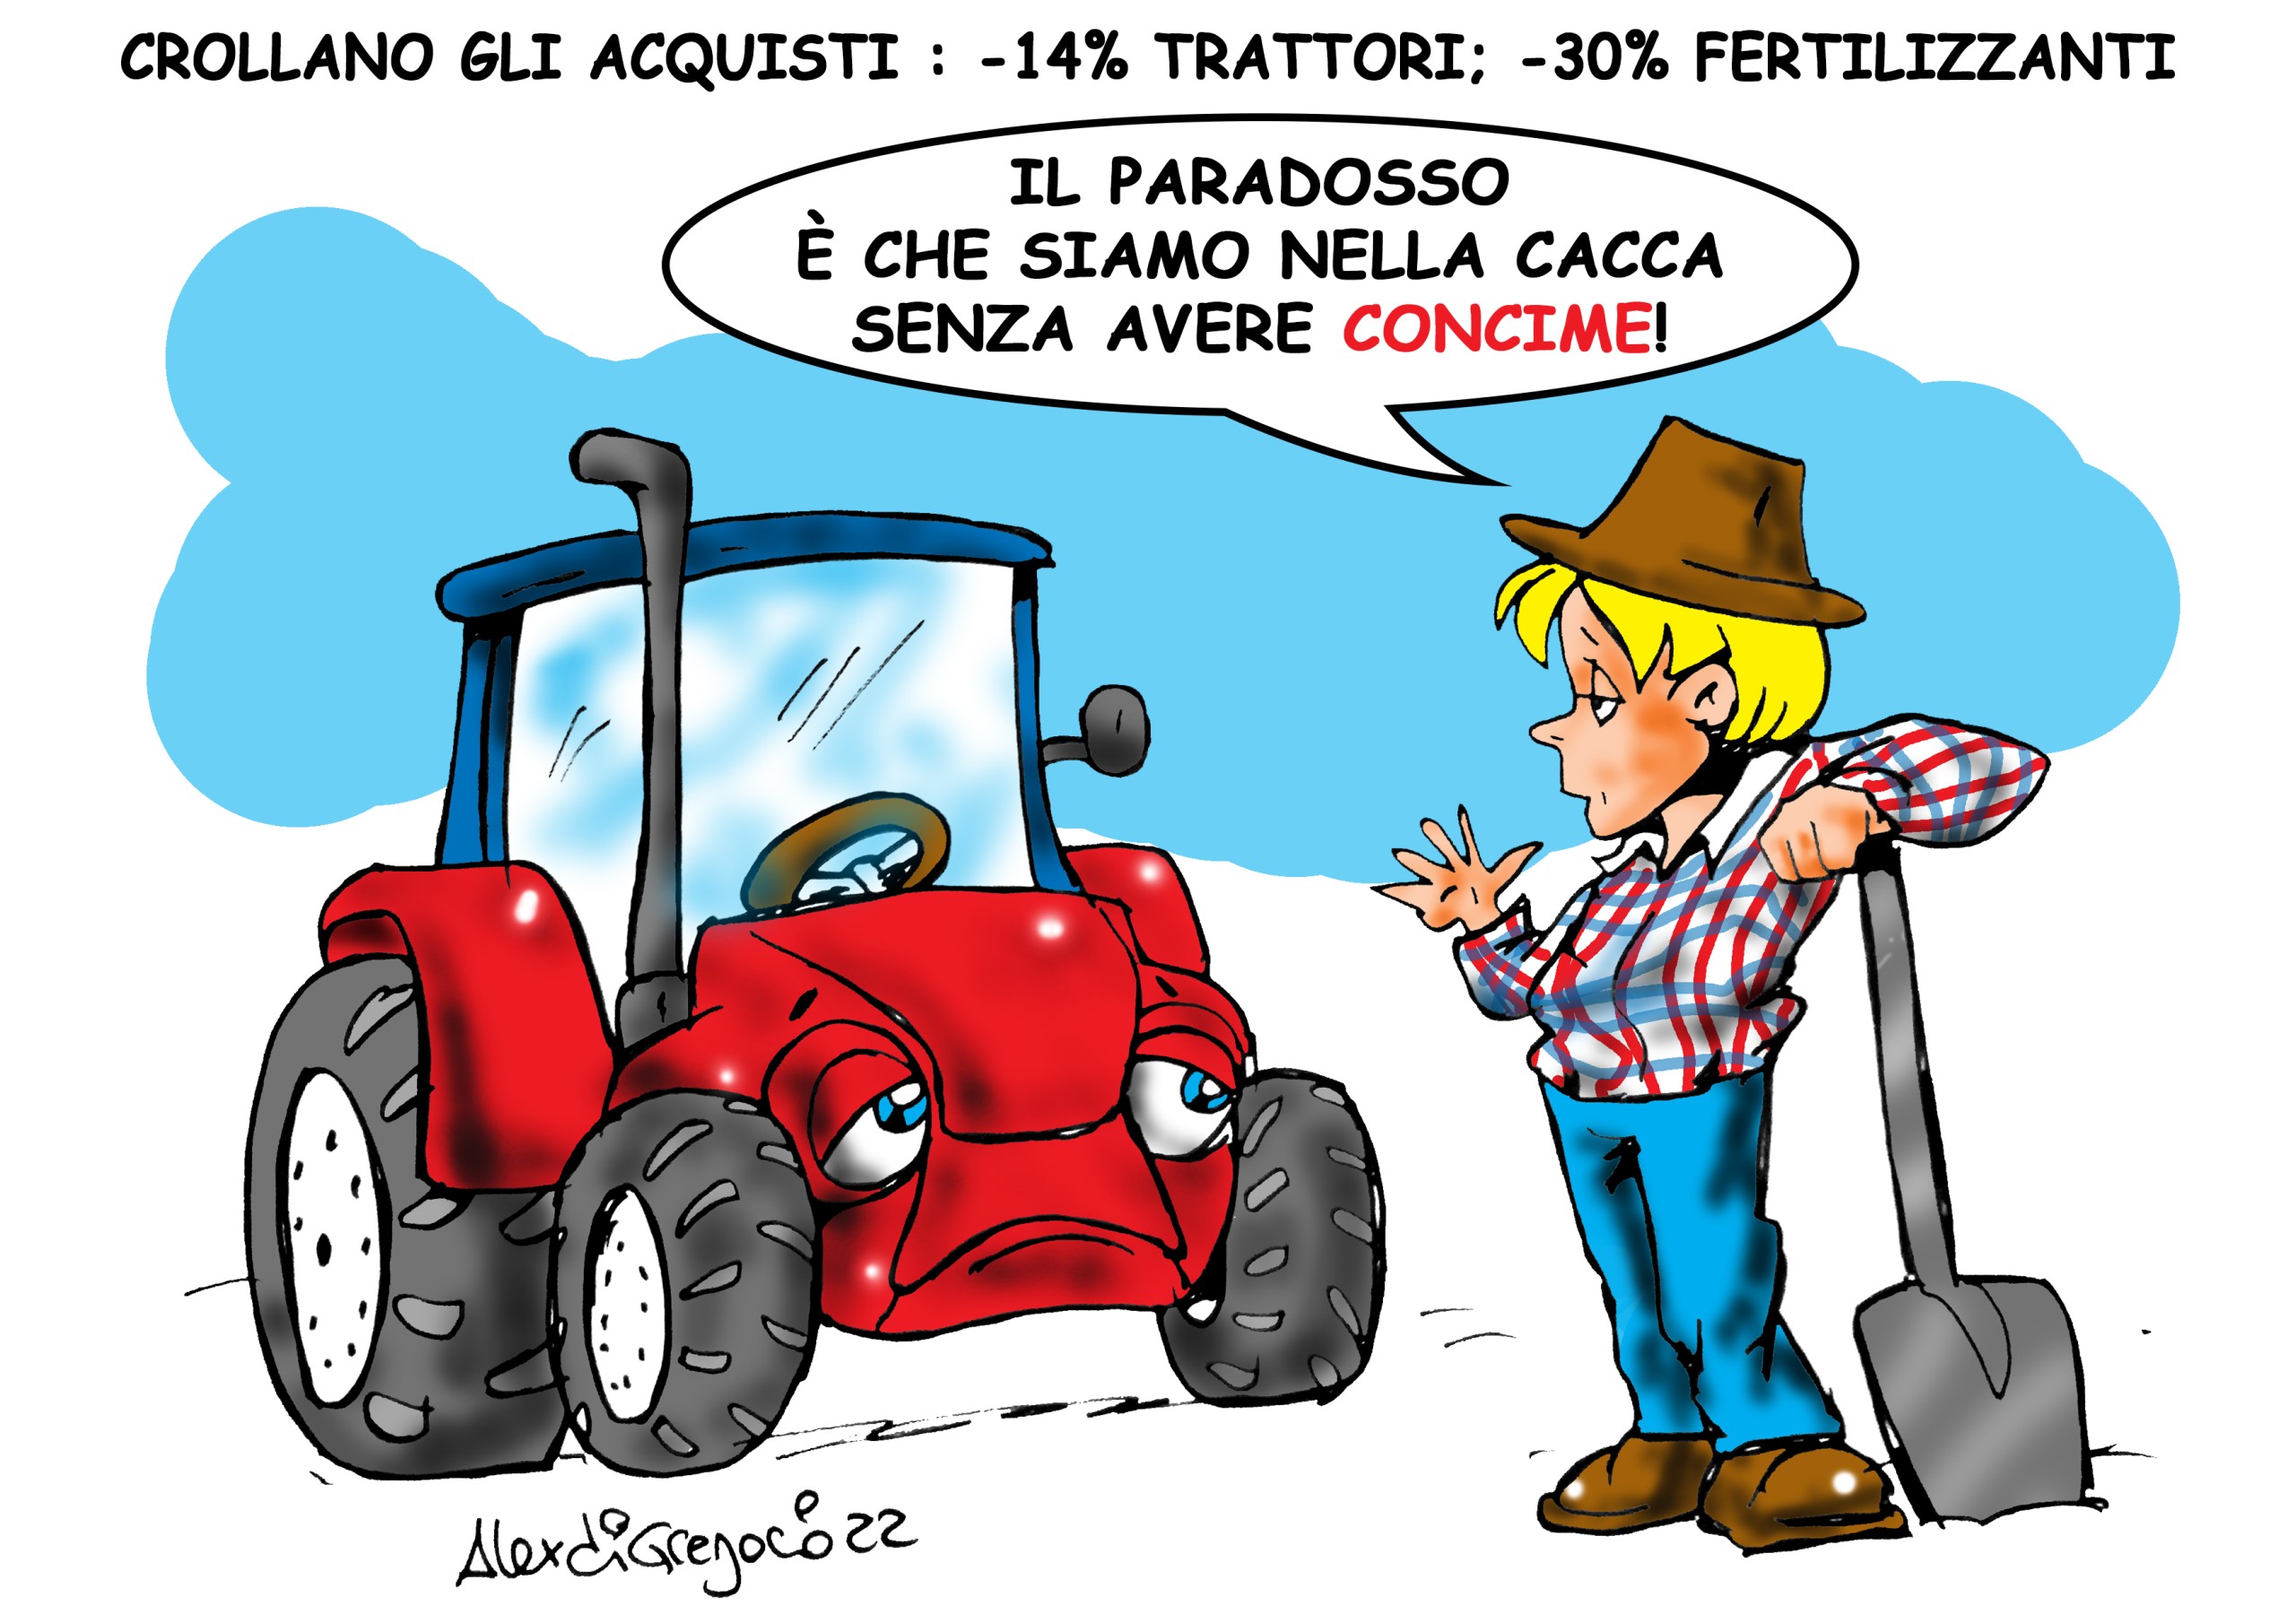 LA VIGNETTA di Alex Di Gregorio: “Crollano gli acquisti in agricoltura: -14% trattori; -30% fertilizzanti”